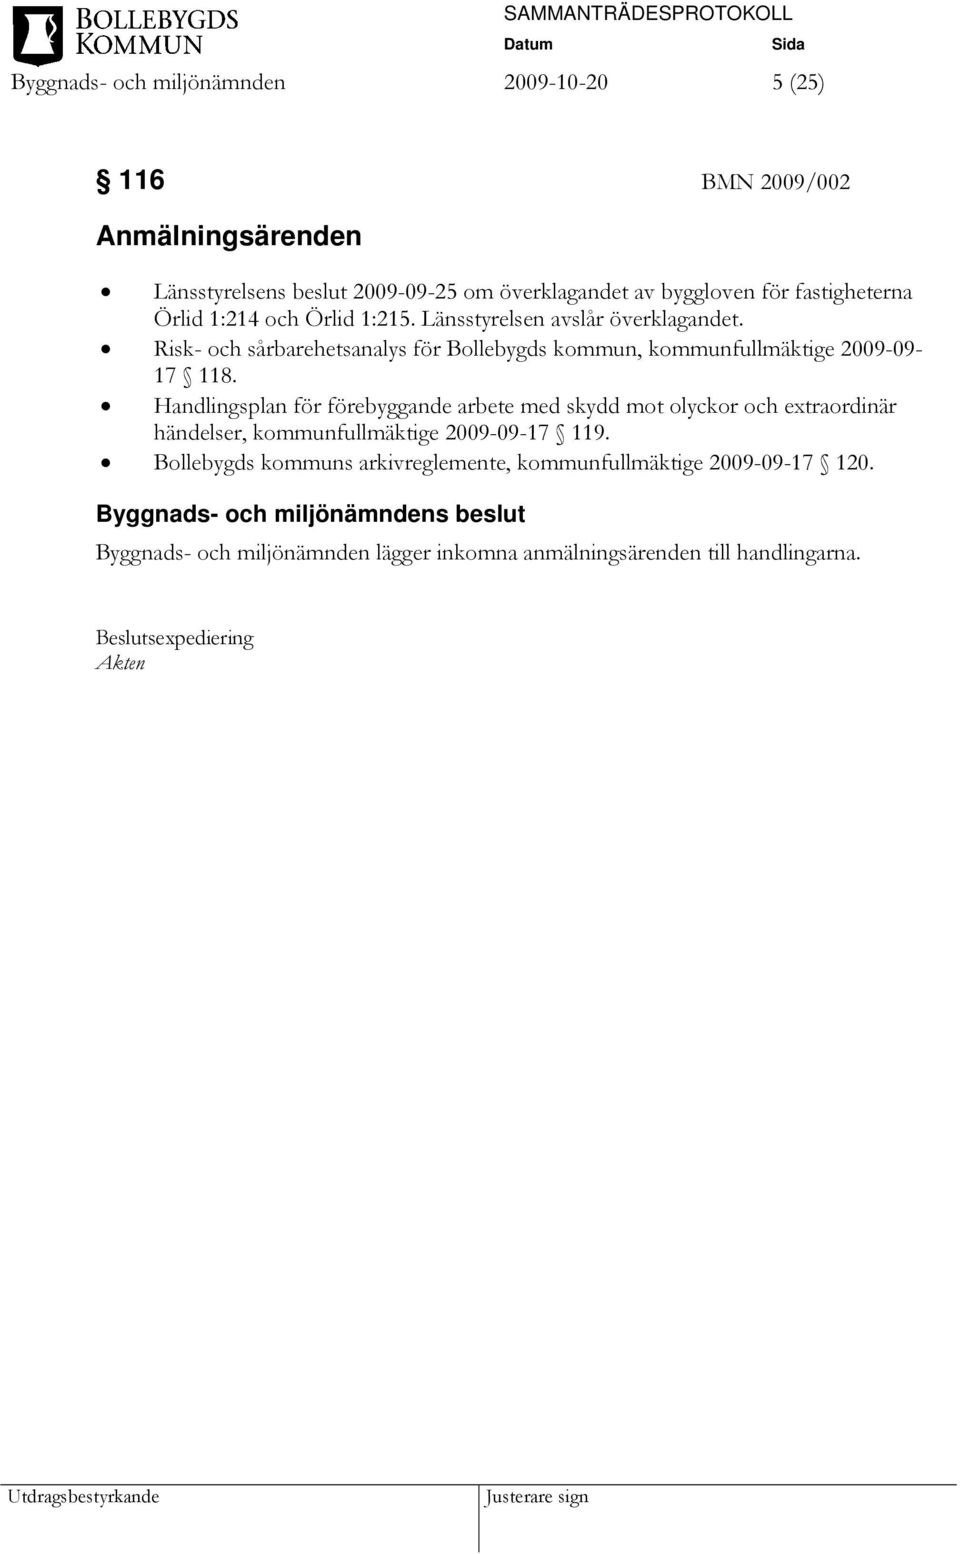 Risk- och sårbarehetsanalys för Bollebygds kommun, kommunfullmäktige 2009-09- 17 118.